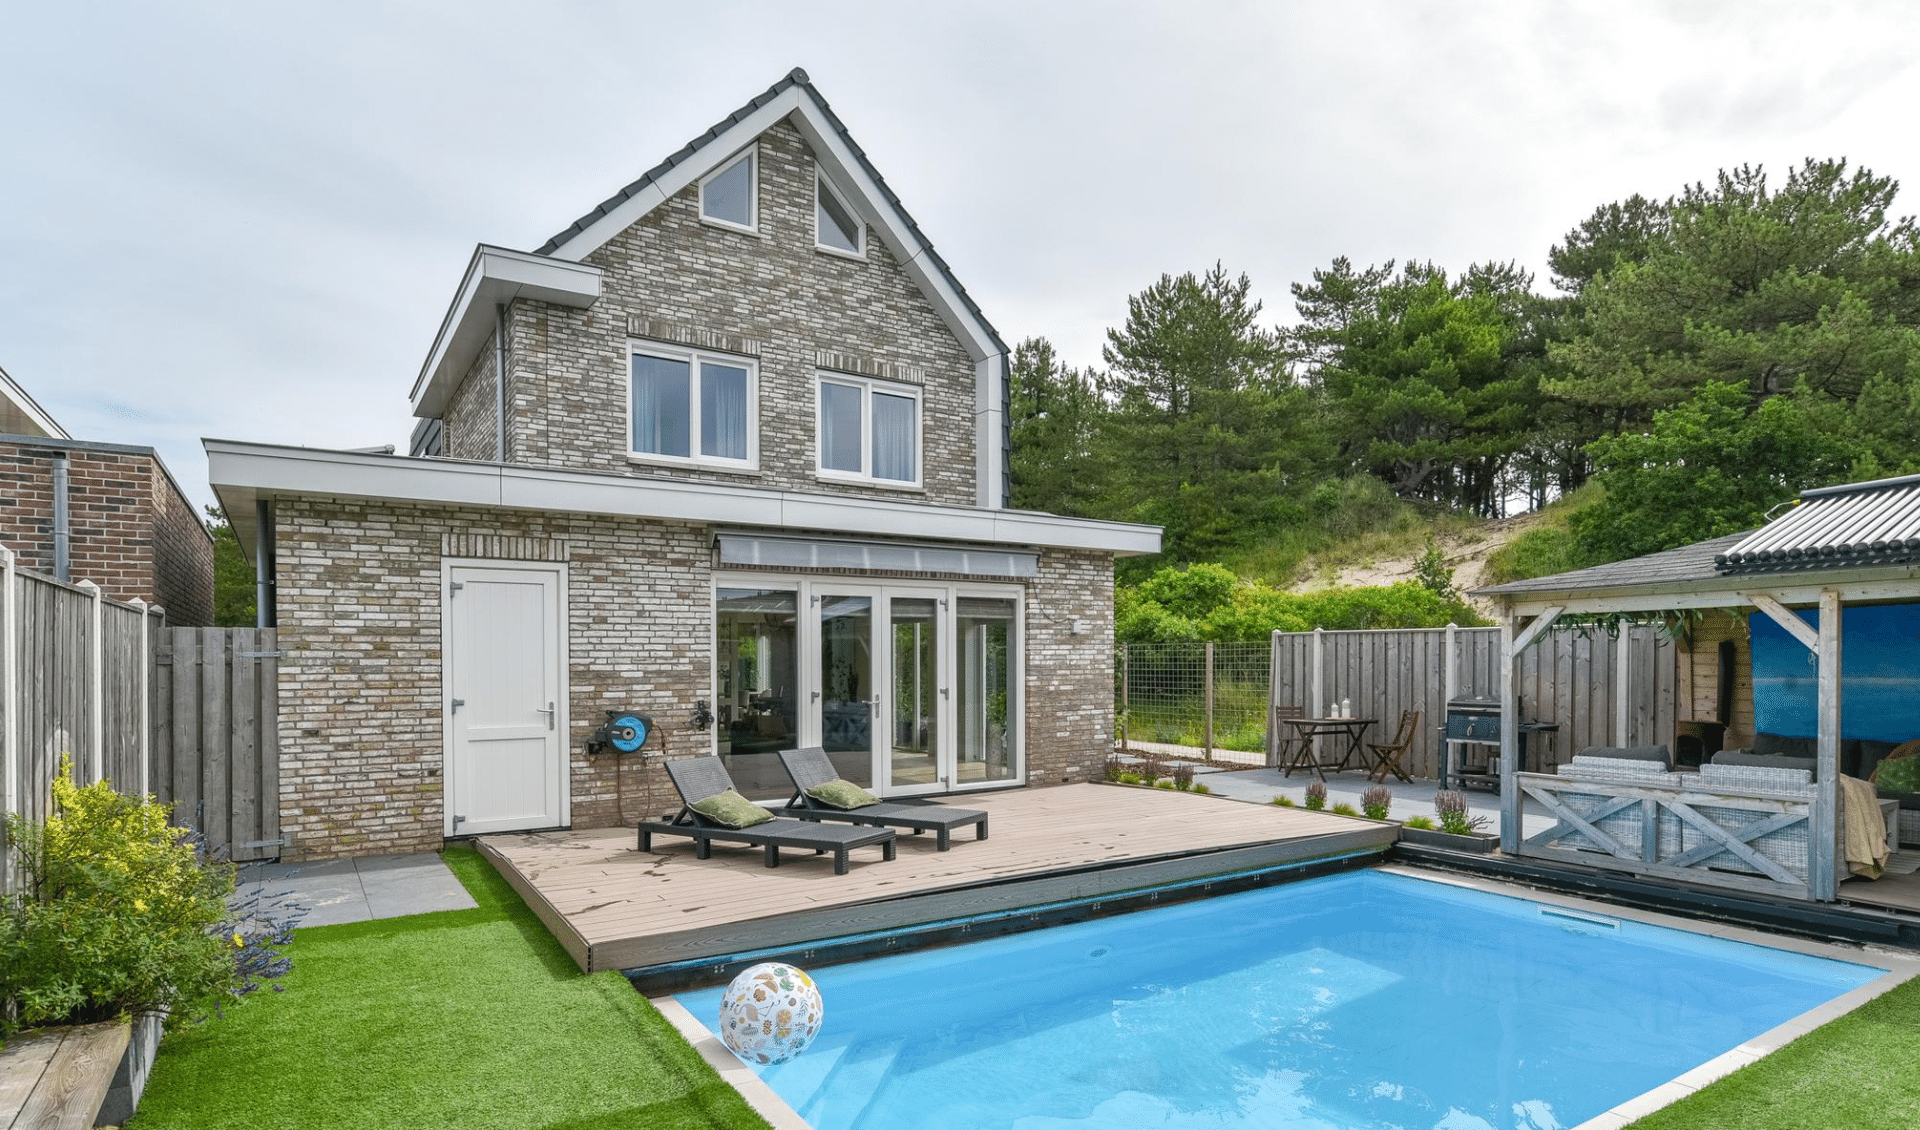 Foto van huis met zwembad. Sneller huis verkopen door online marketing.